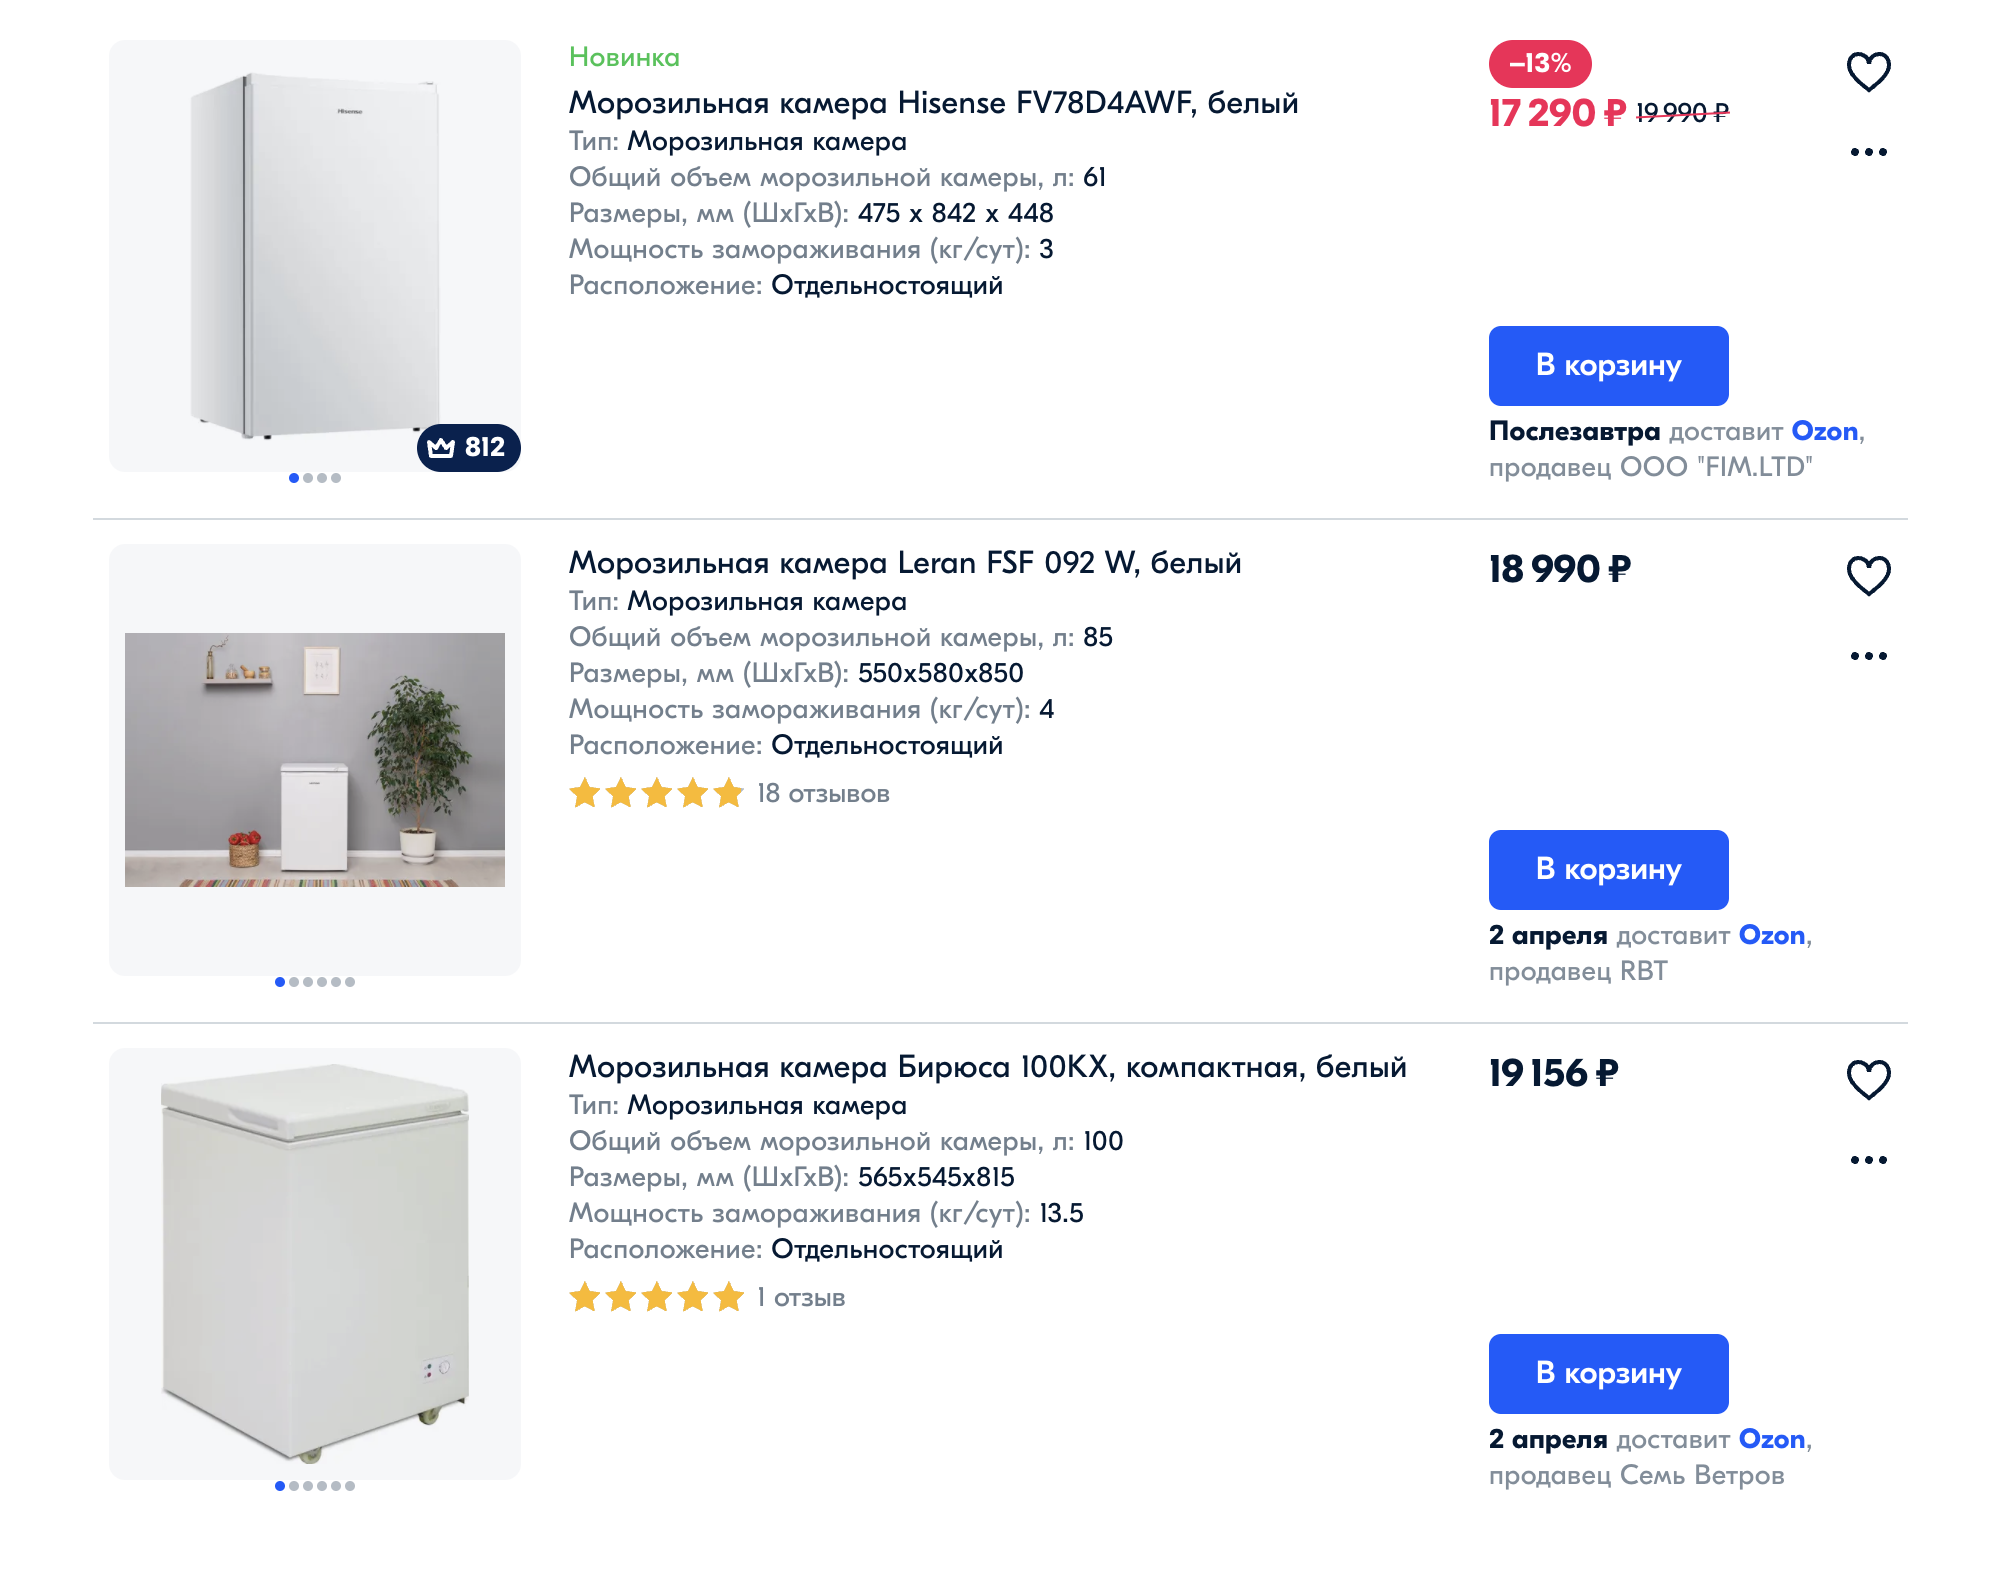 Цены на морозильные камеры начинаются от 17 000 ₽. Источник: ozon.ru